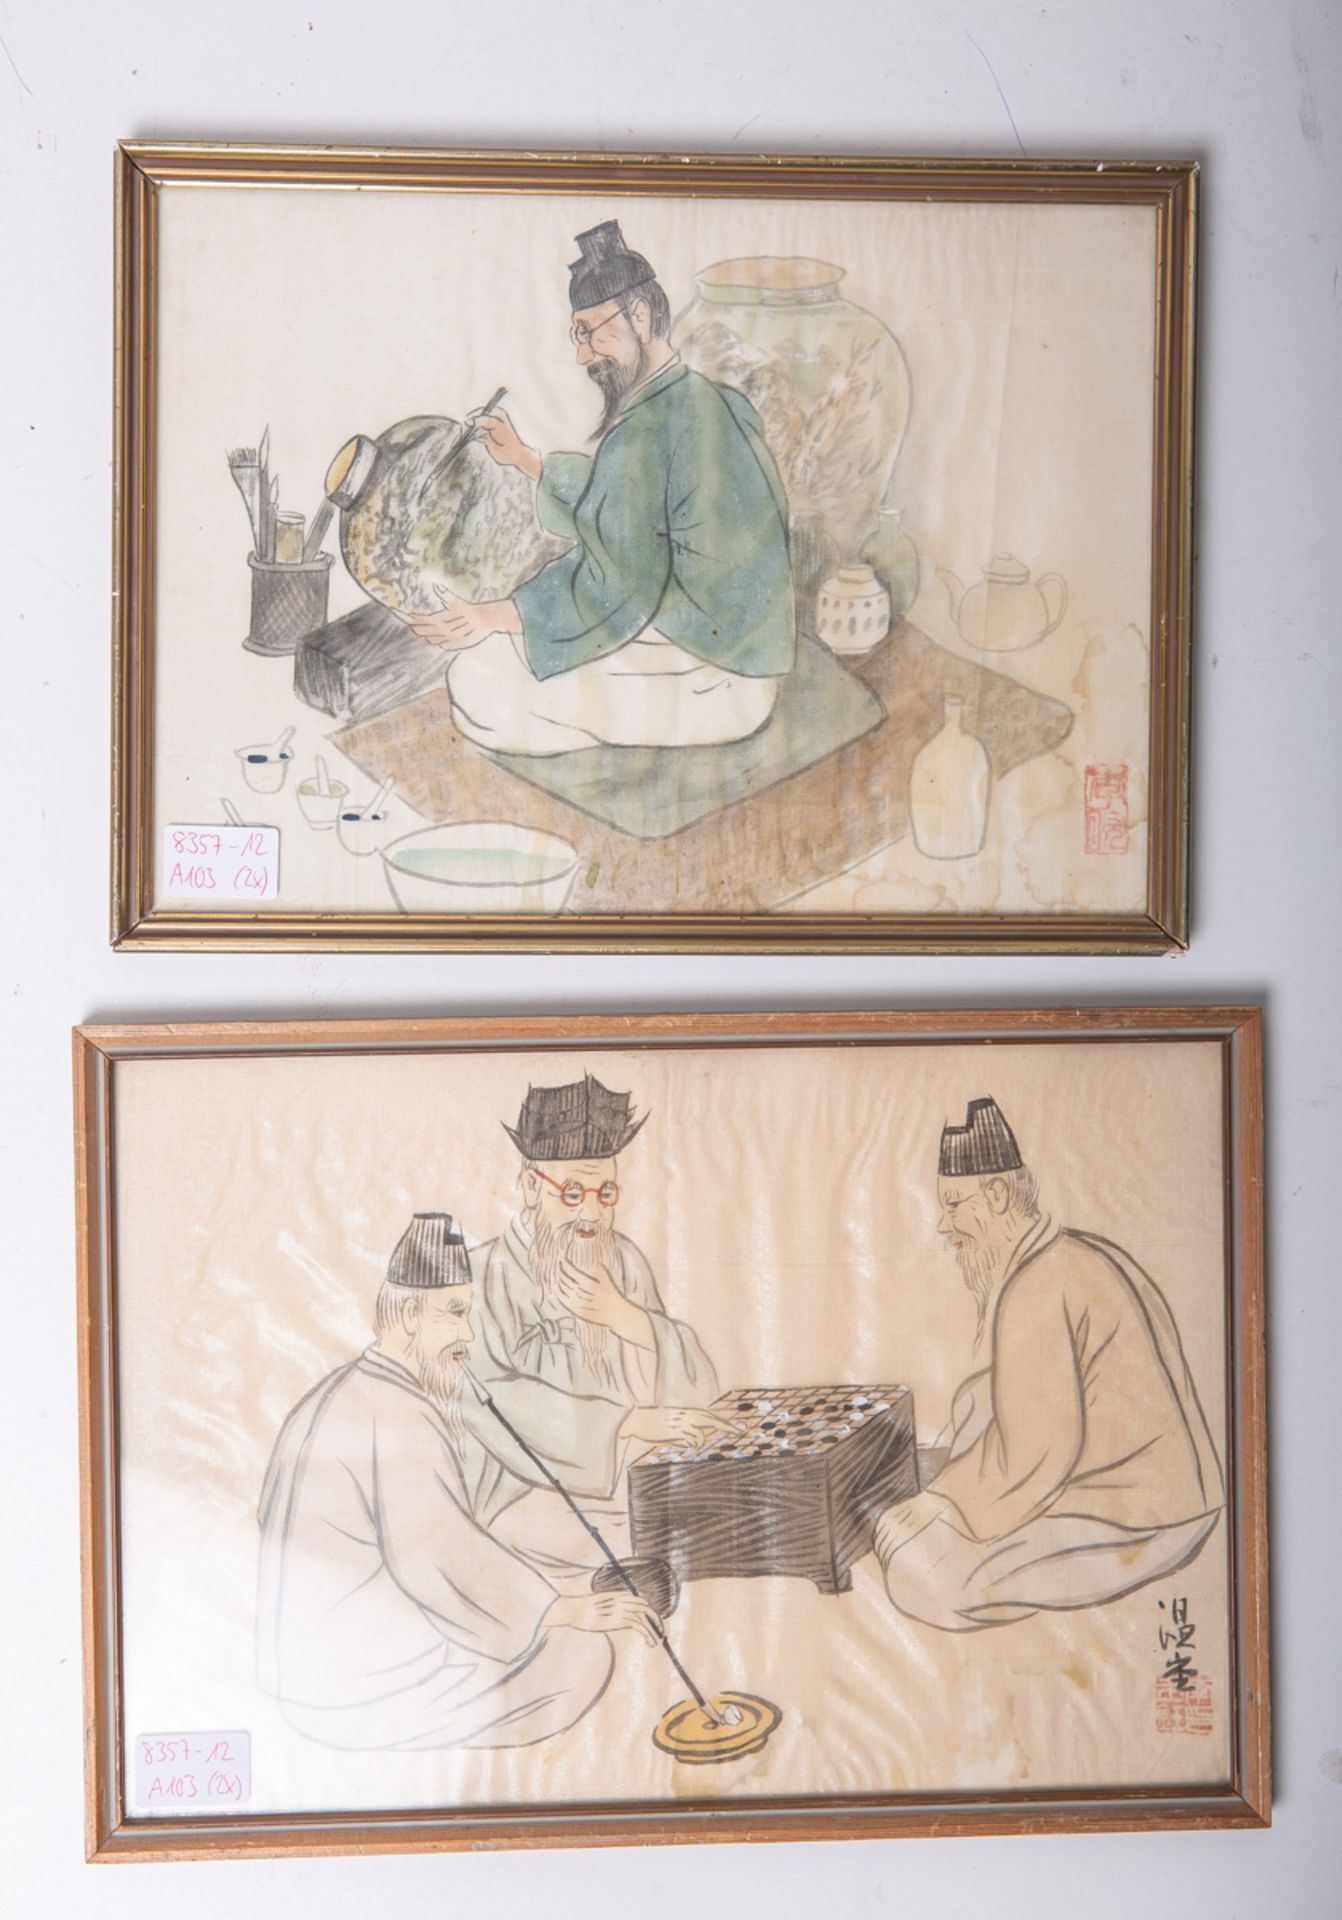 Unbekannter Künstler (wohl 18./19. Jh.), Konvolut von 2 chinesischen Malereien auf Stoff - Image 2 of 2